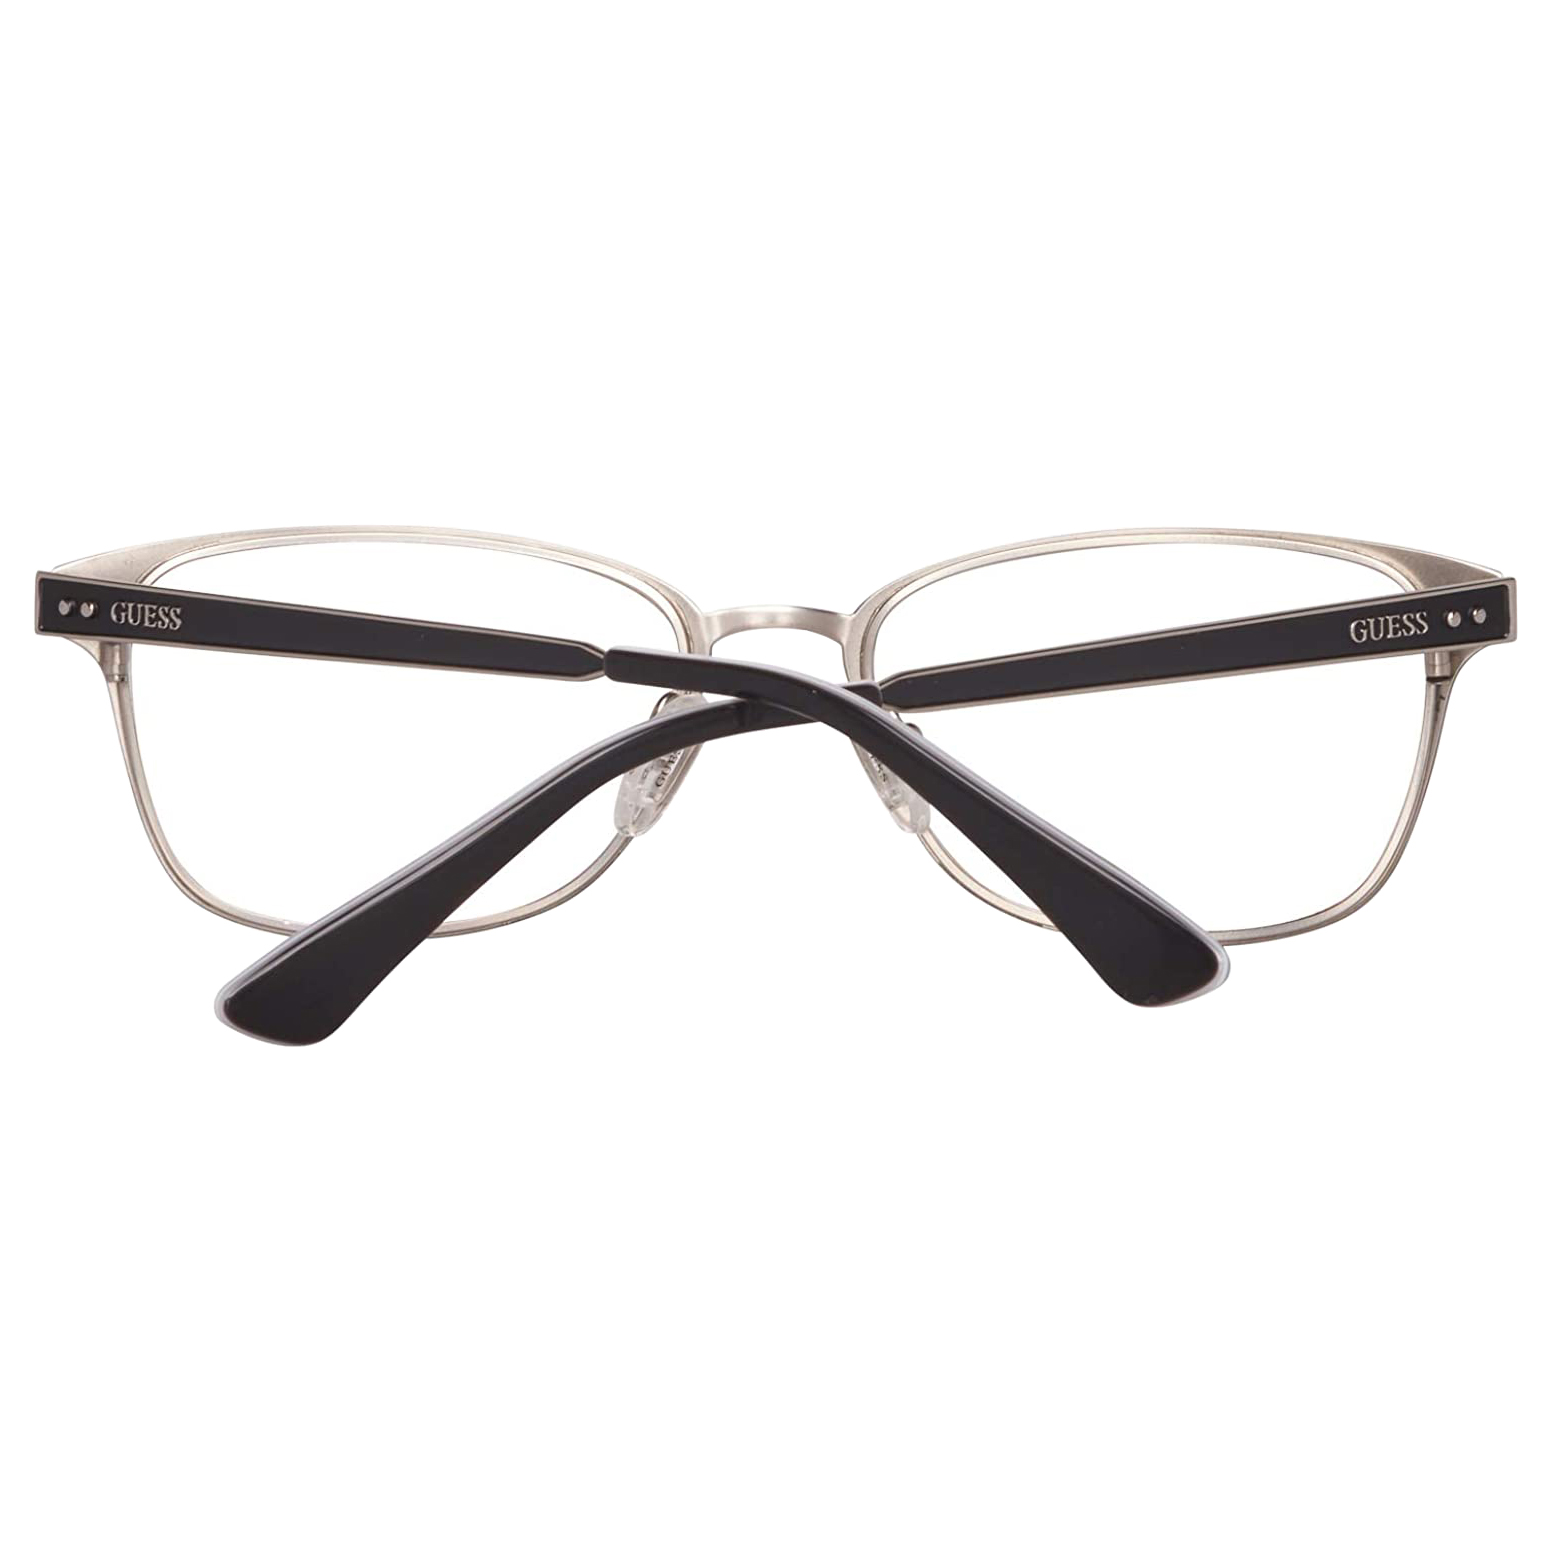 فریم عینک طبی زنانه گس مدل GU2550002 -  - 2